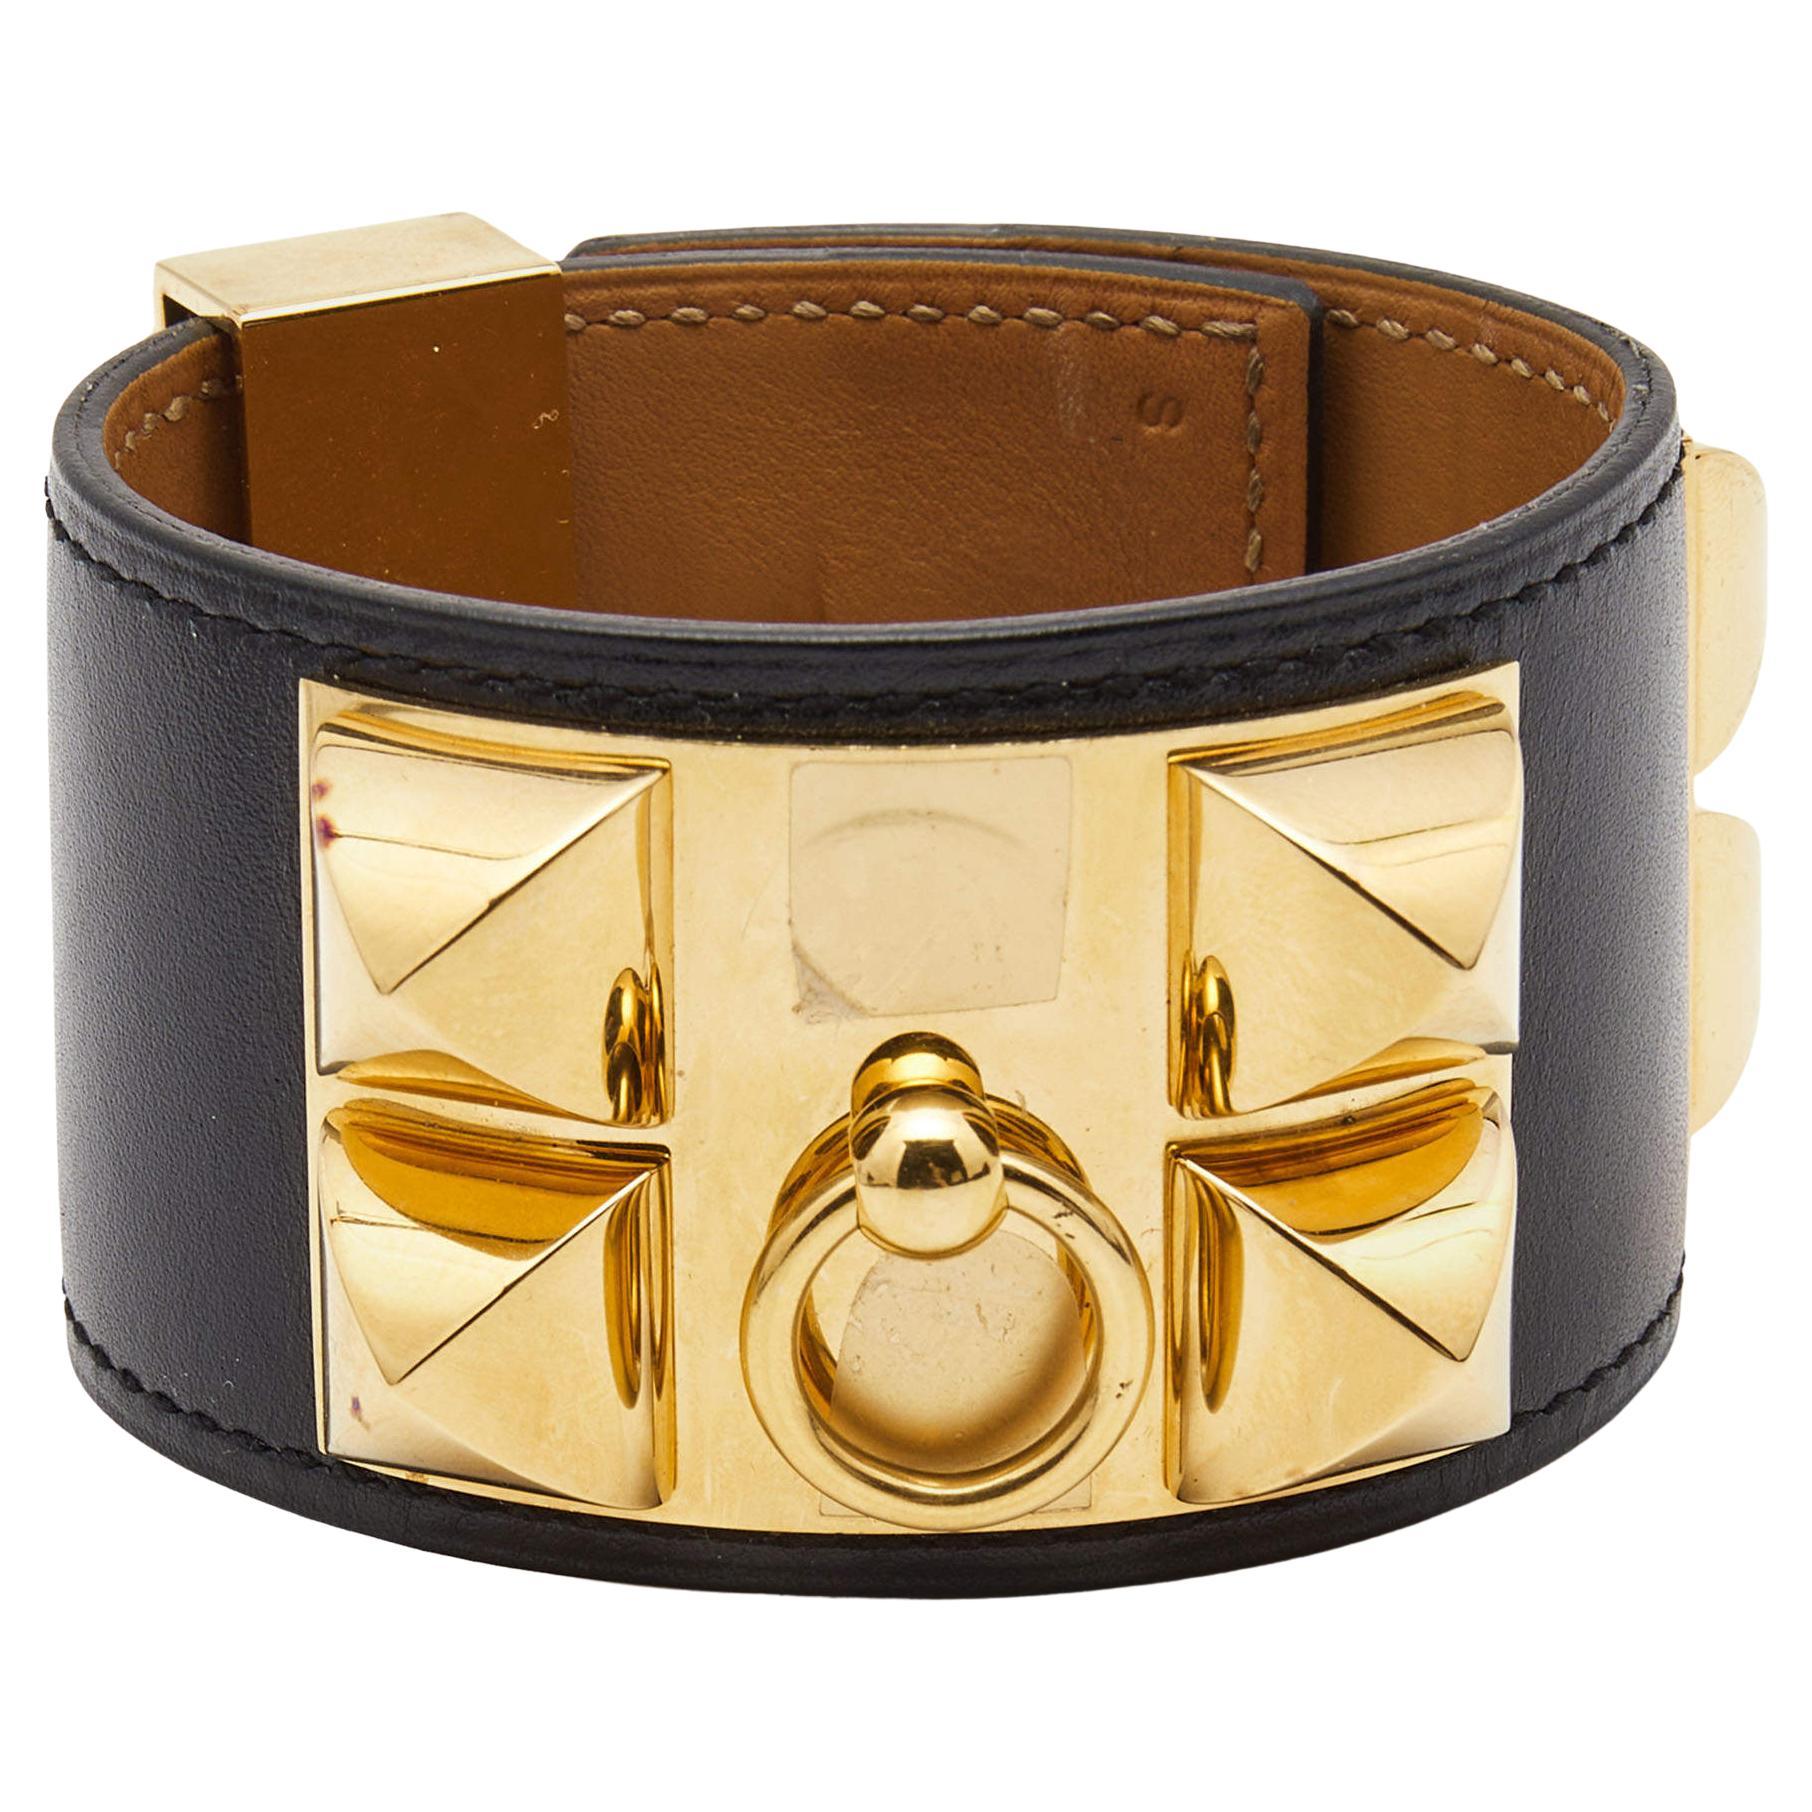 Hermes Collier de Chien Leather Gold Plated Bracelet